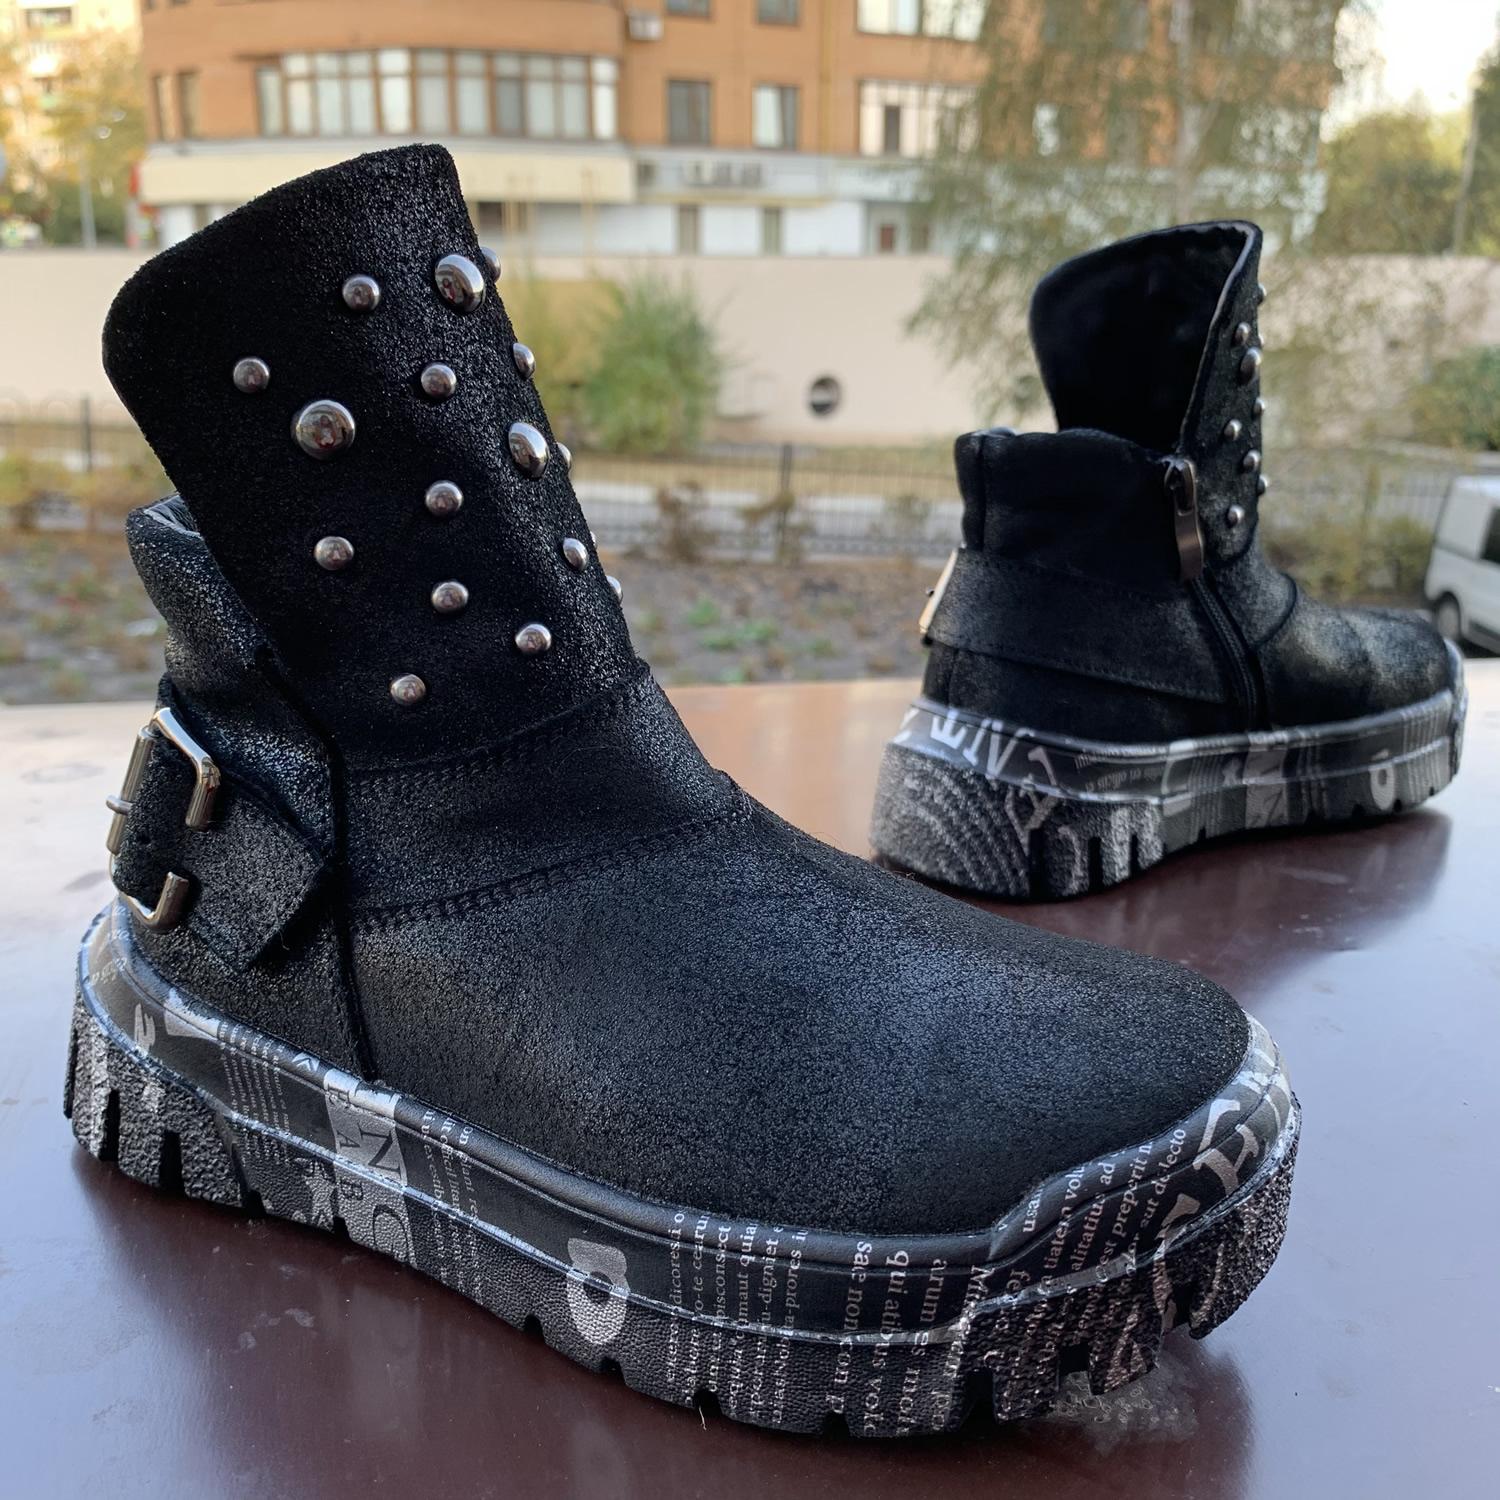 Зимові черевики для дівчинки, чорні (08414 / 266УШ), Bistfor